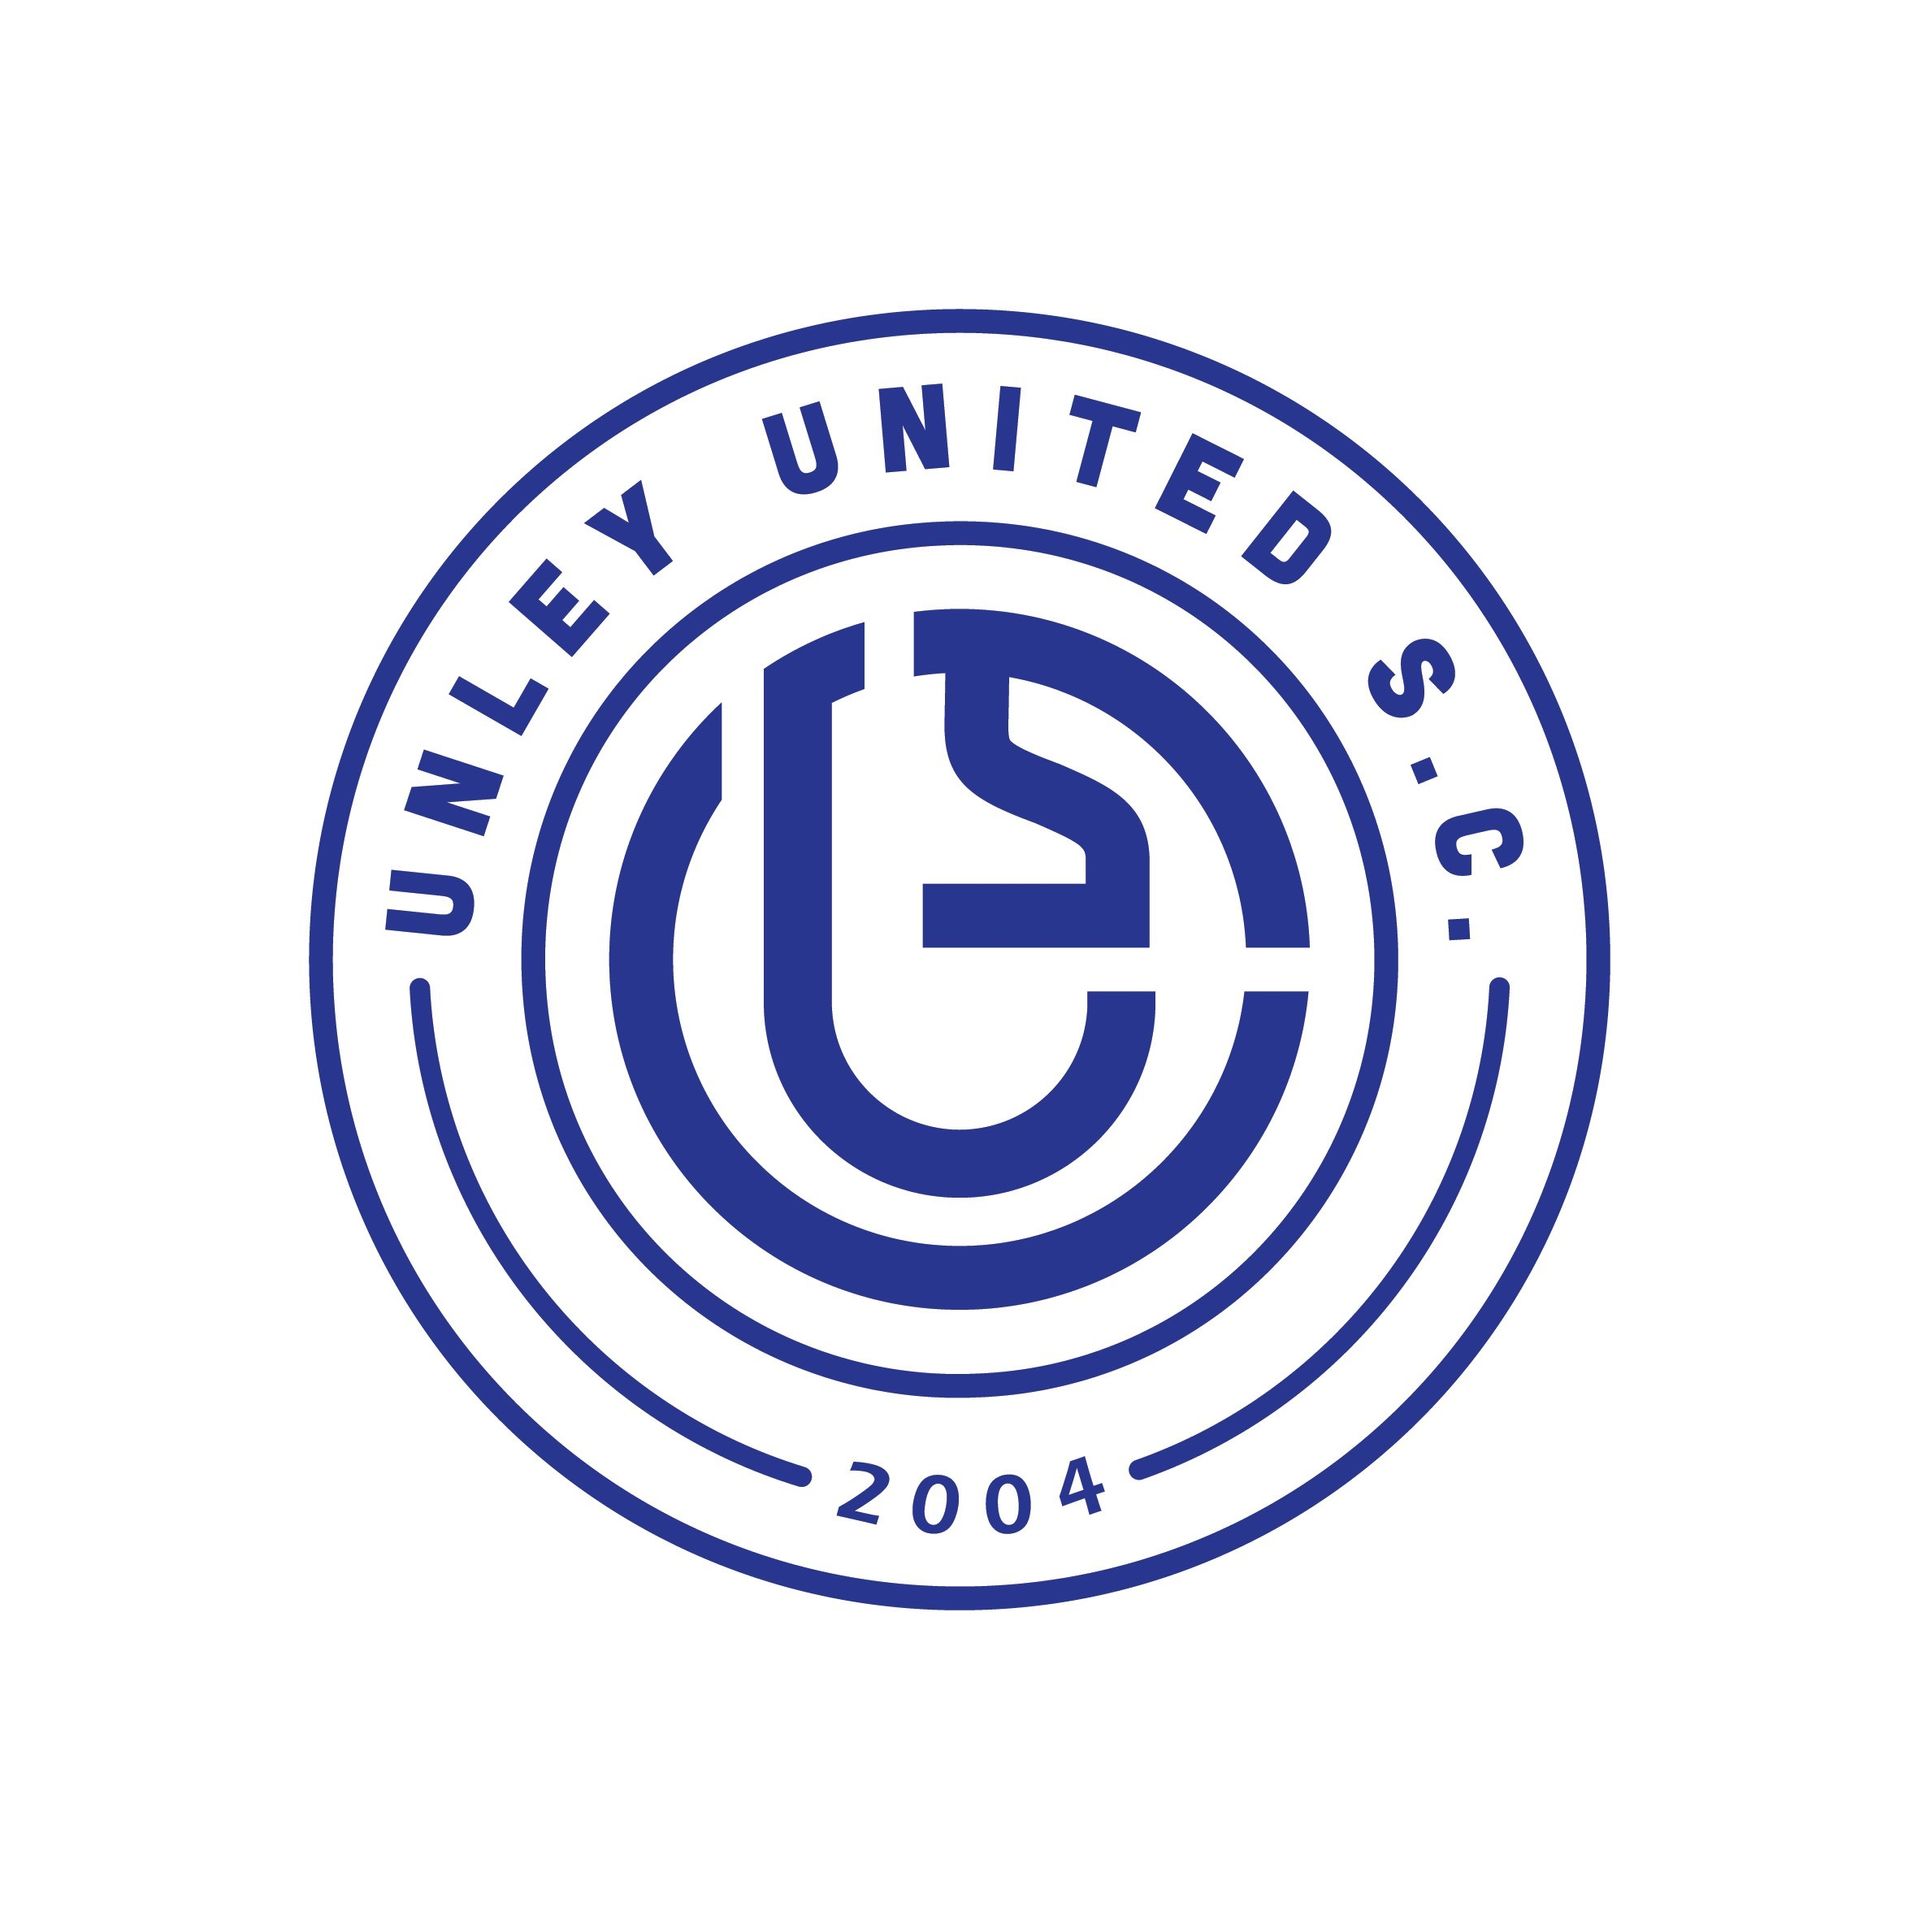 Unley United Soccer Club